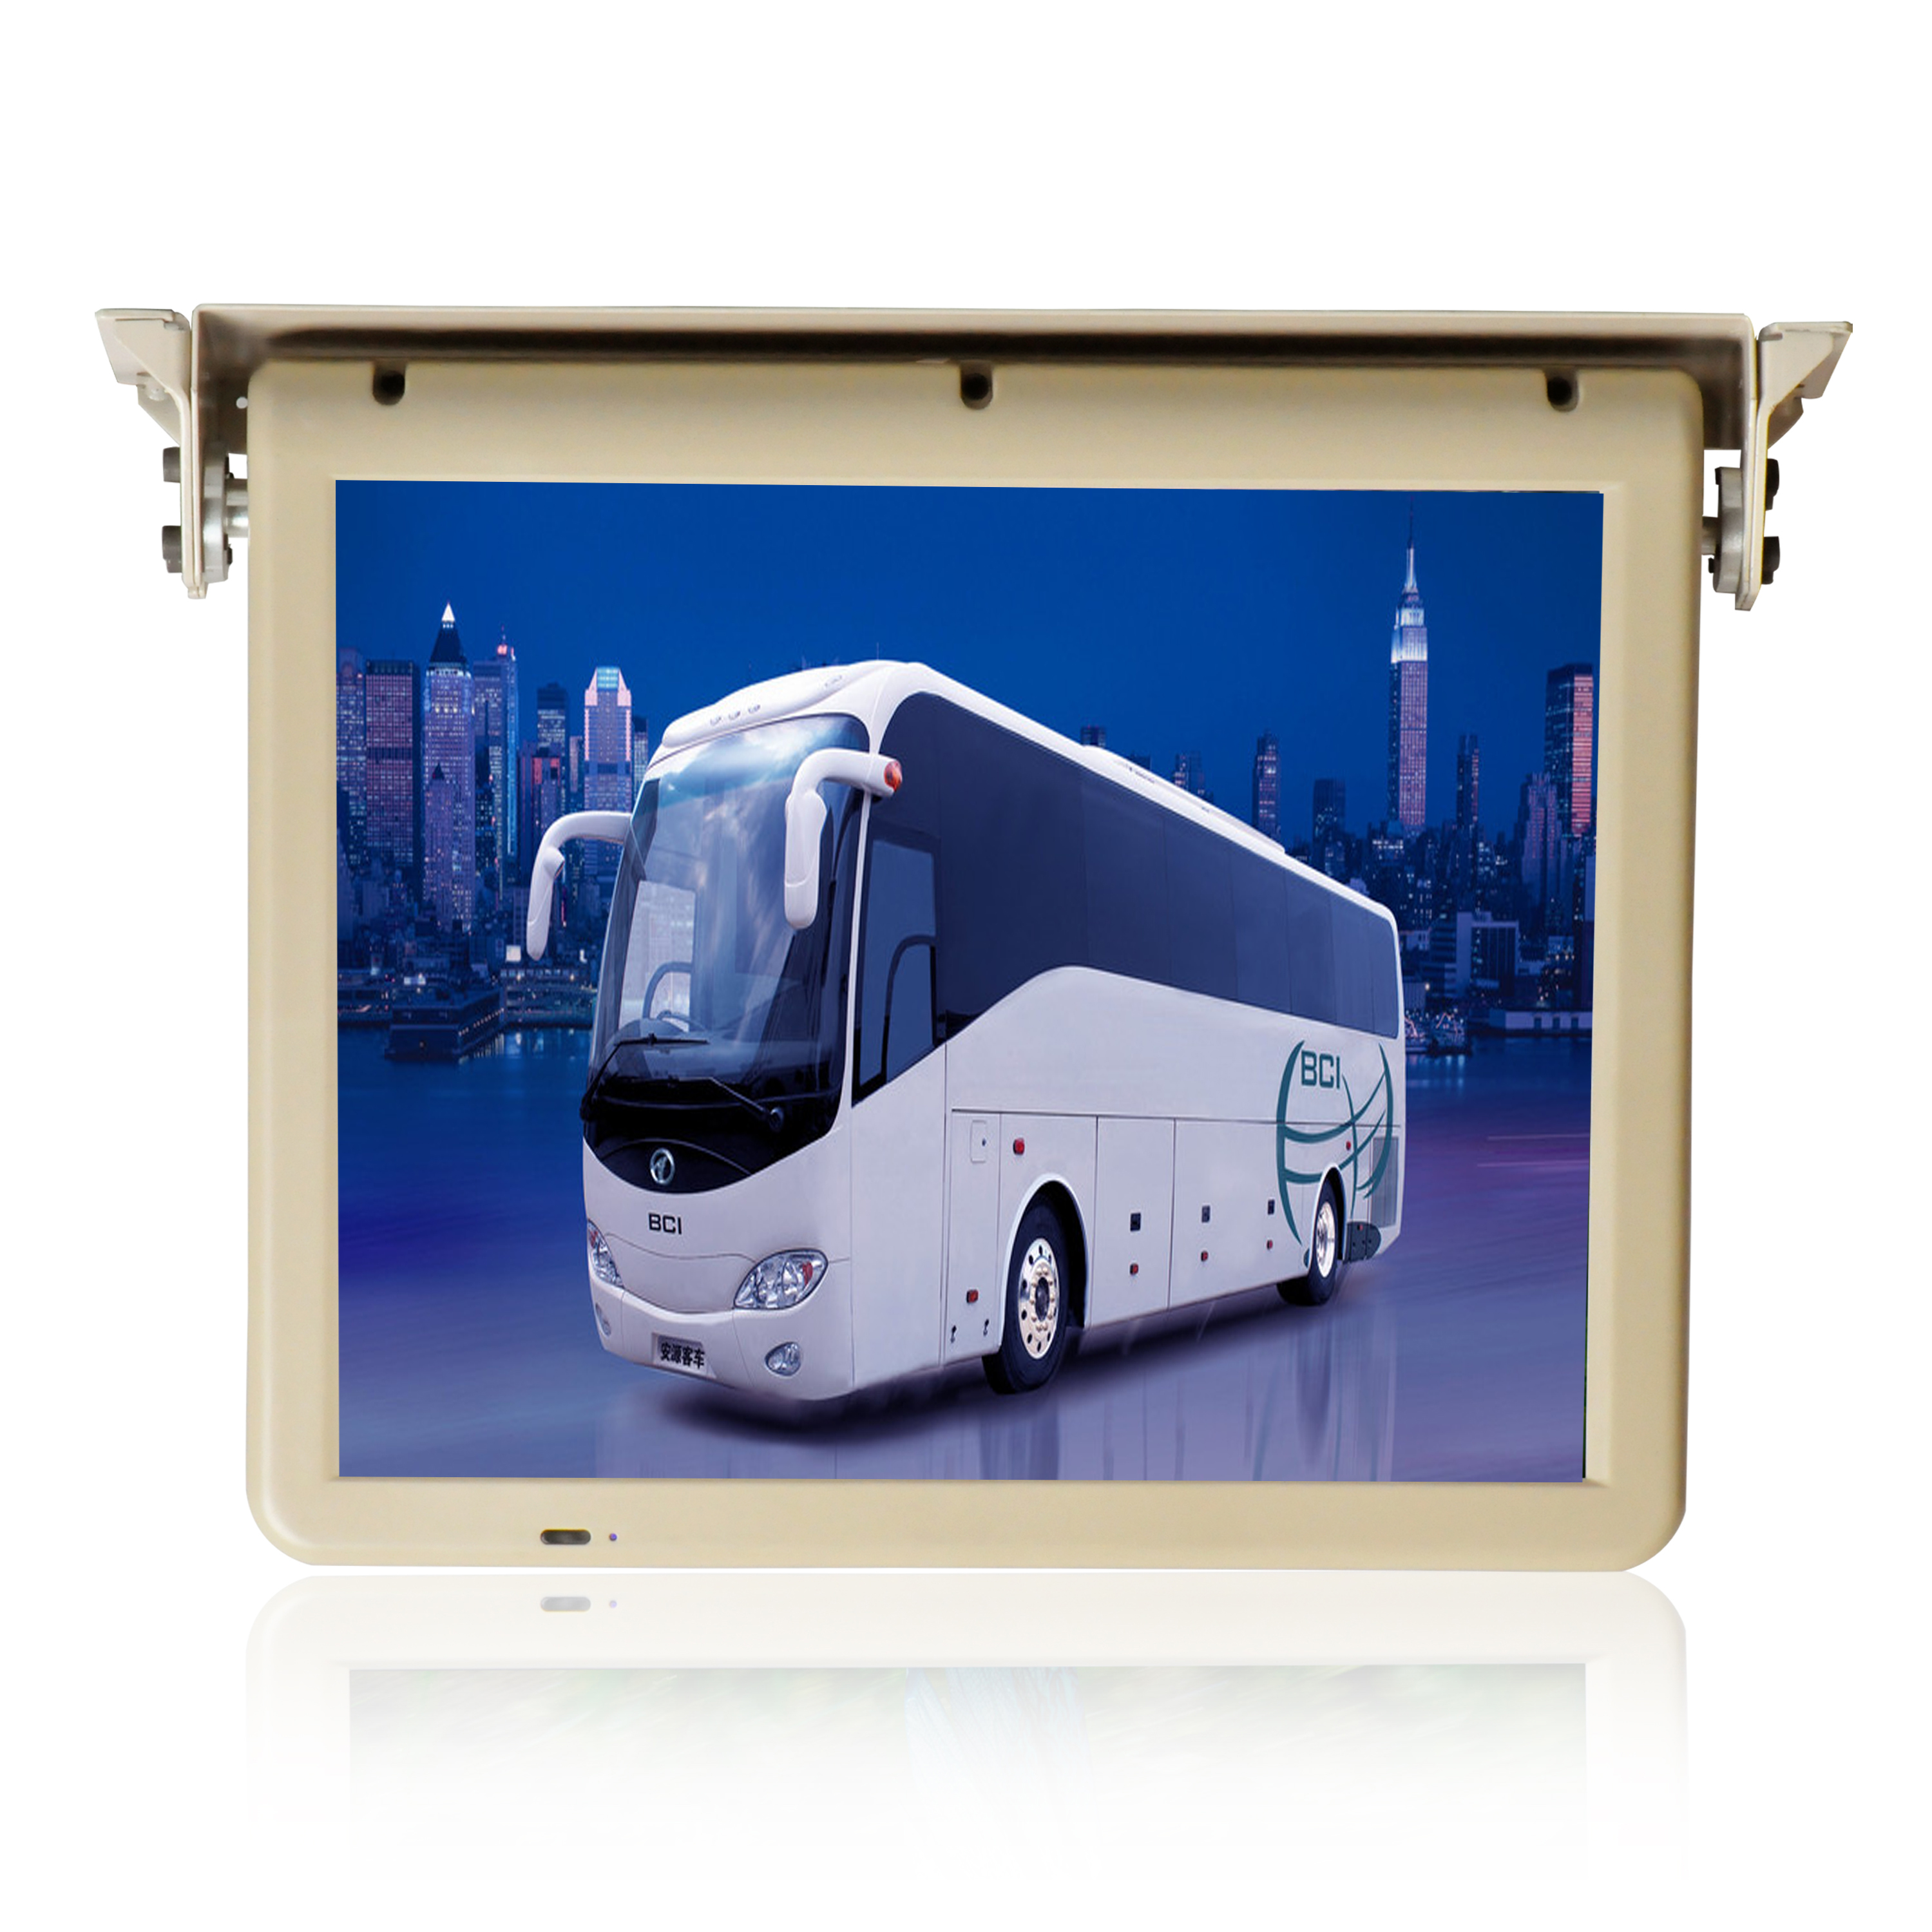 东莞厂家优质供应17寸车载吸顶电动液晶显示器高清分辨率